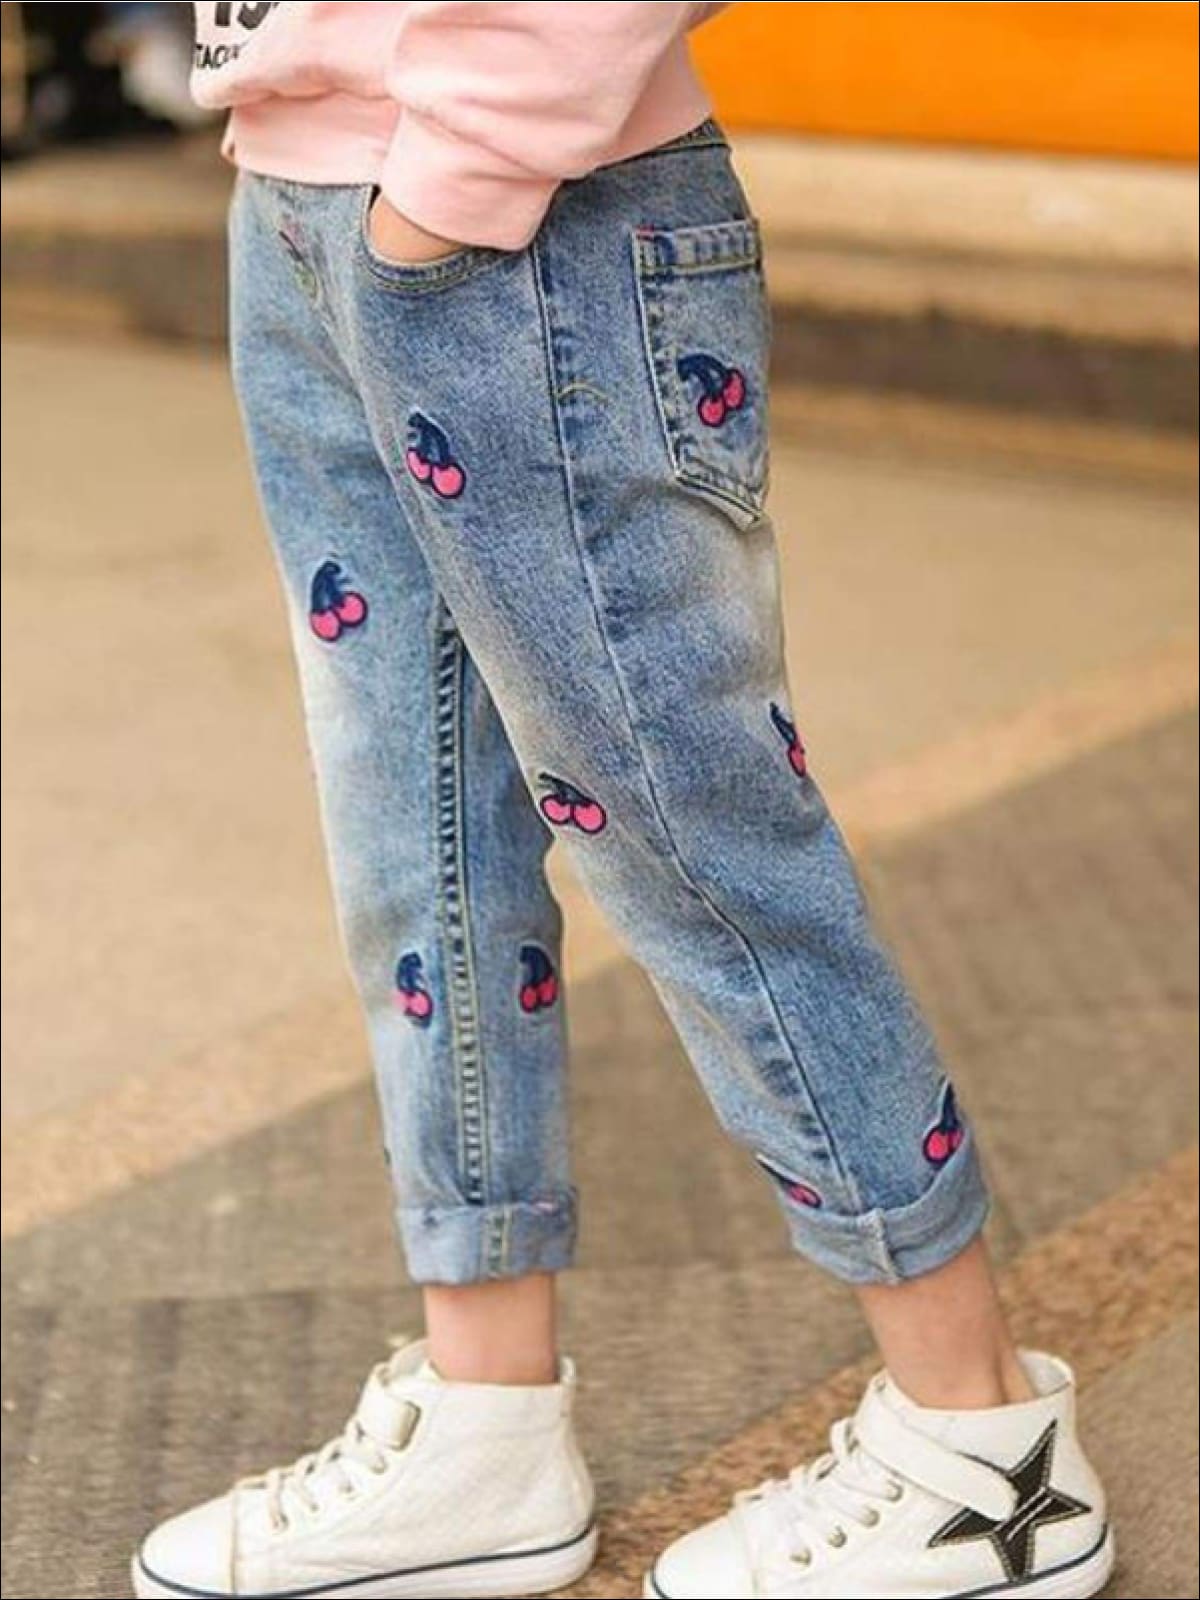 Kids Denim Clothes | Vintage Cherry Patch Jeans | Mia Belle Girls